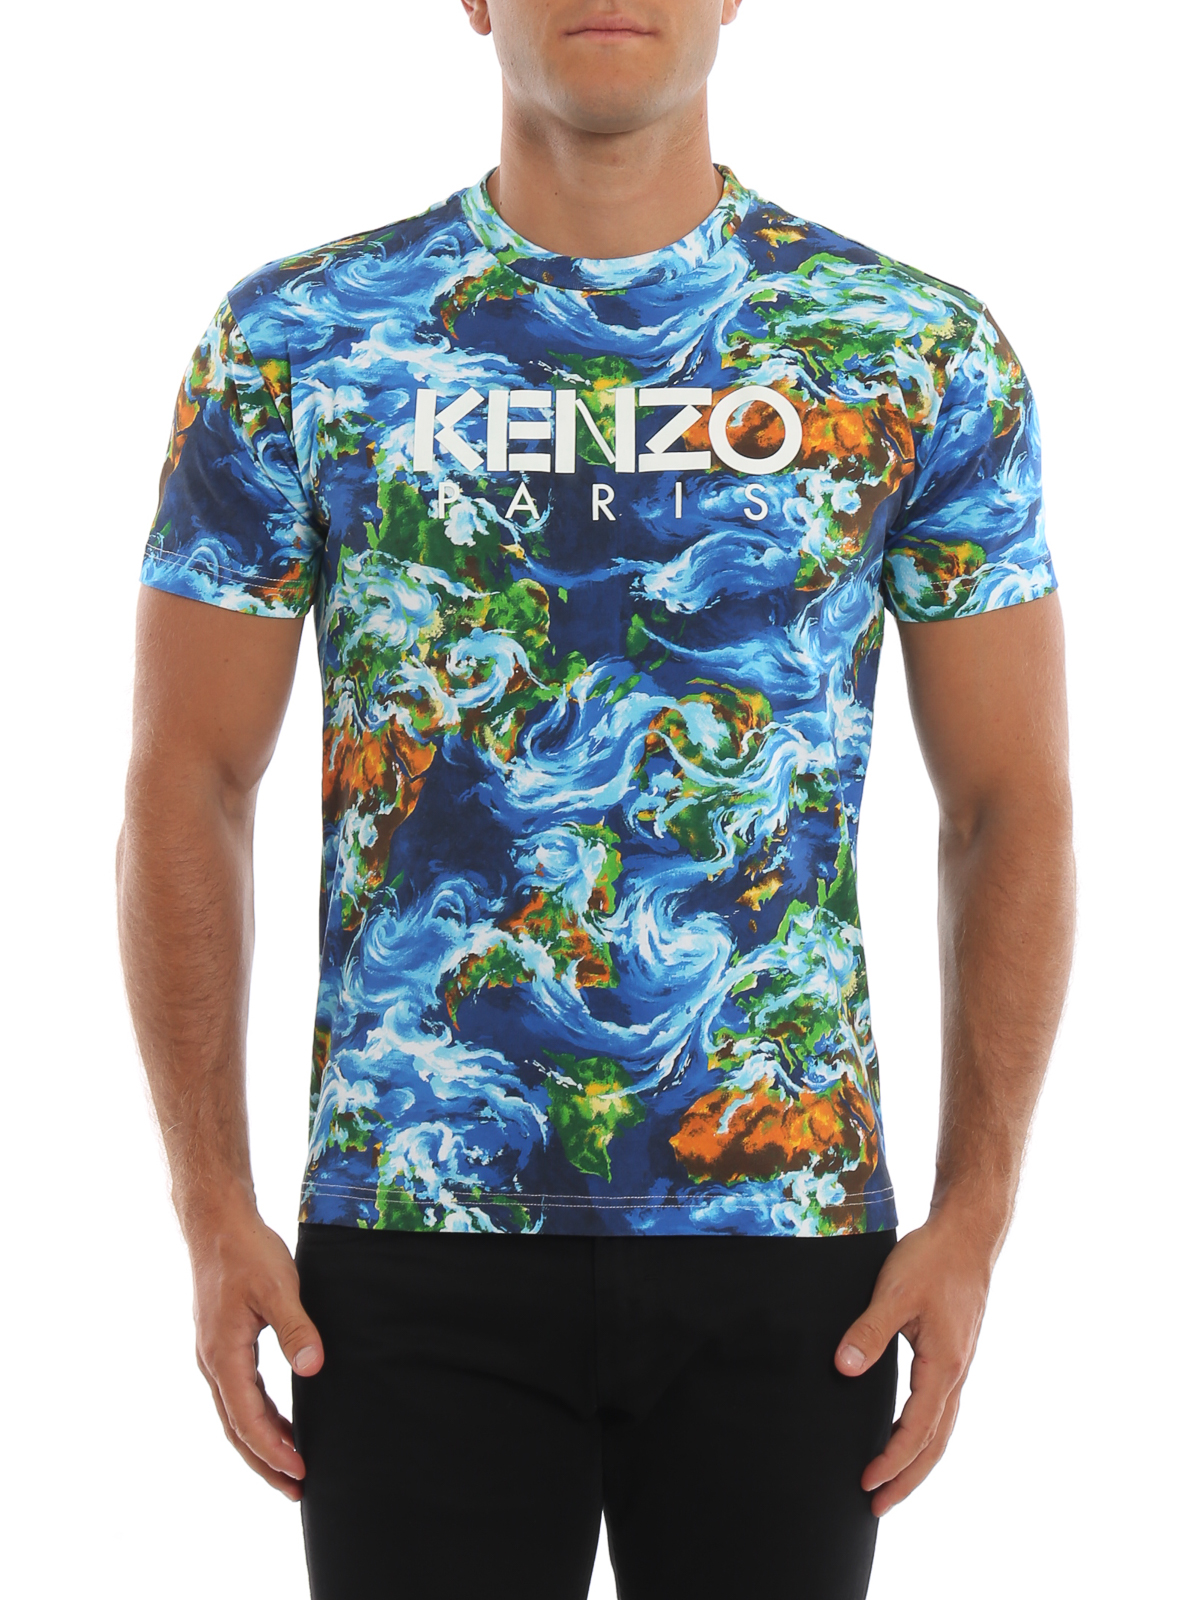 kenzo sweatshirt price